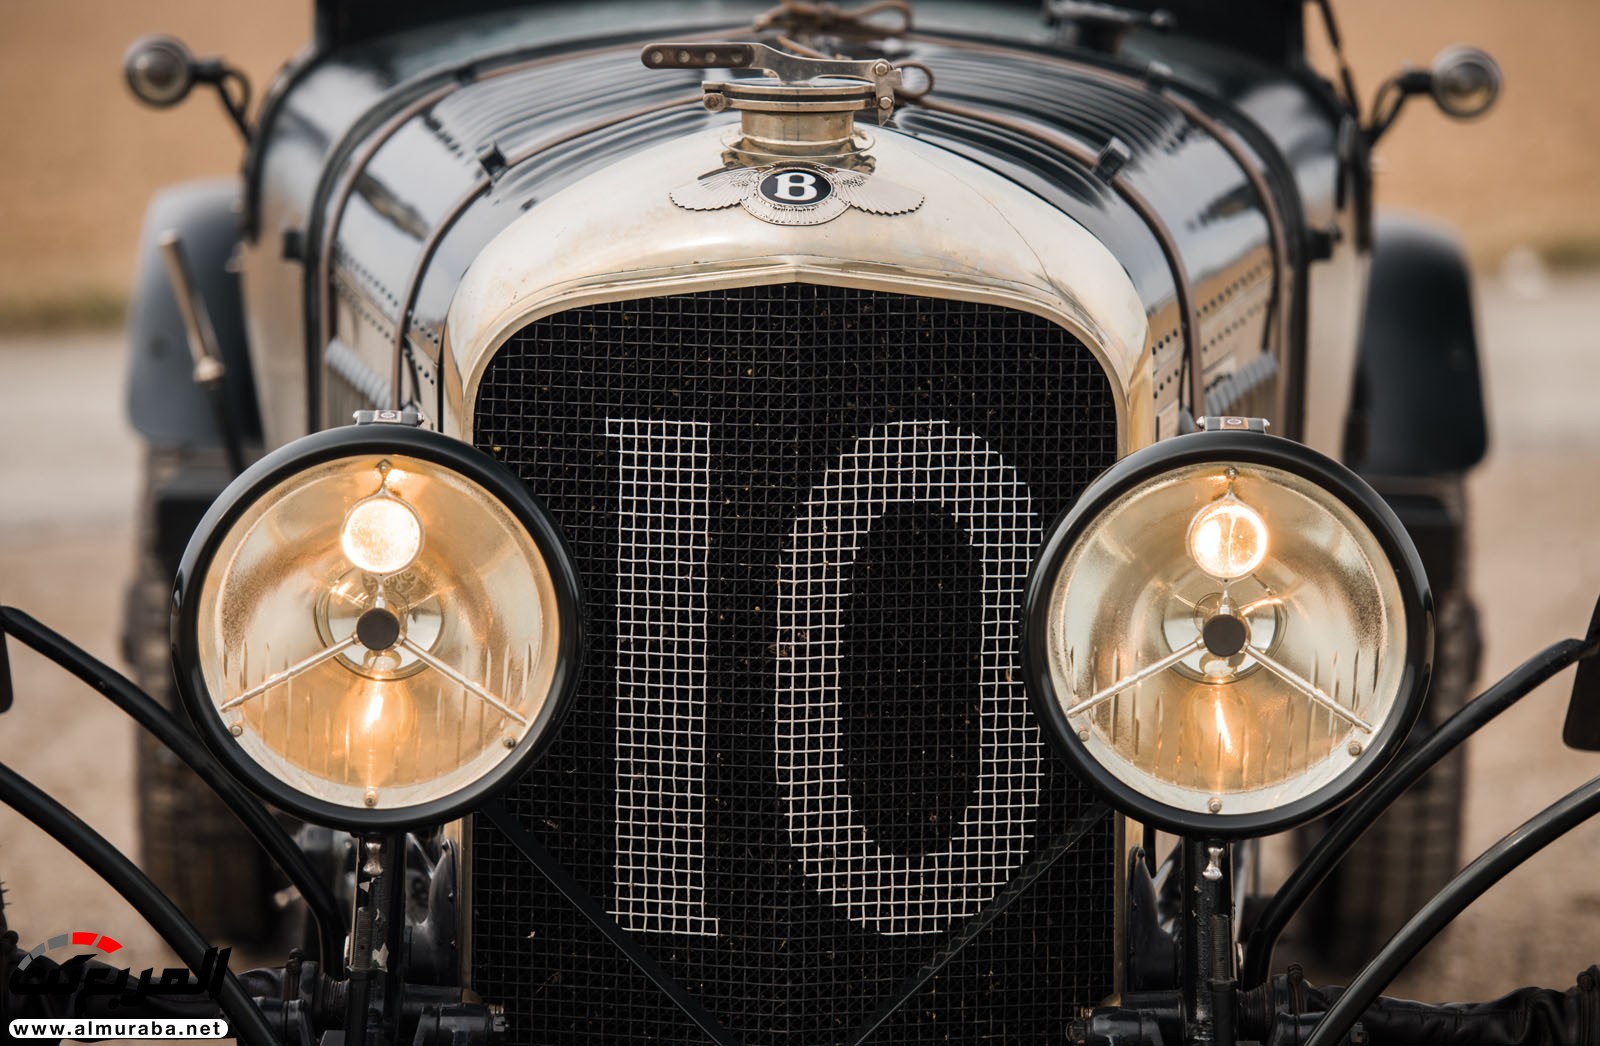 "بالصور" سيارة بنتلي موديل 1928 المشاركة في سباقات لومان تعرض بـ 7 مليون دولار في مزاد علني 98